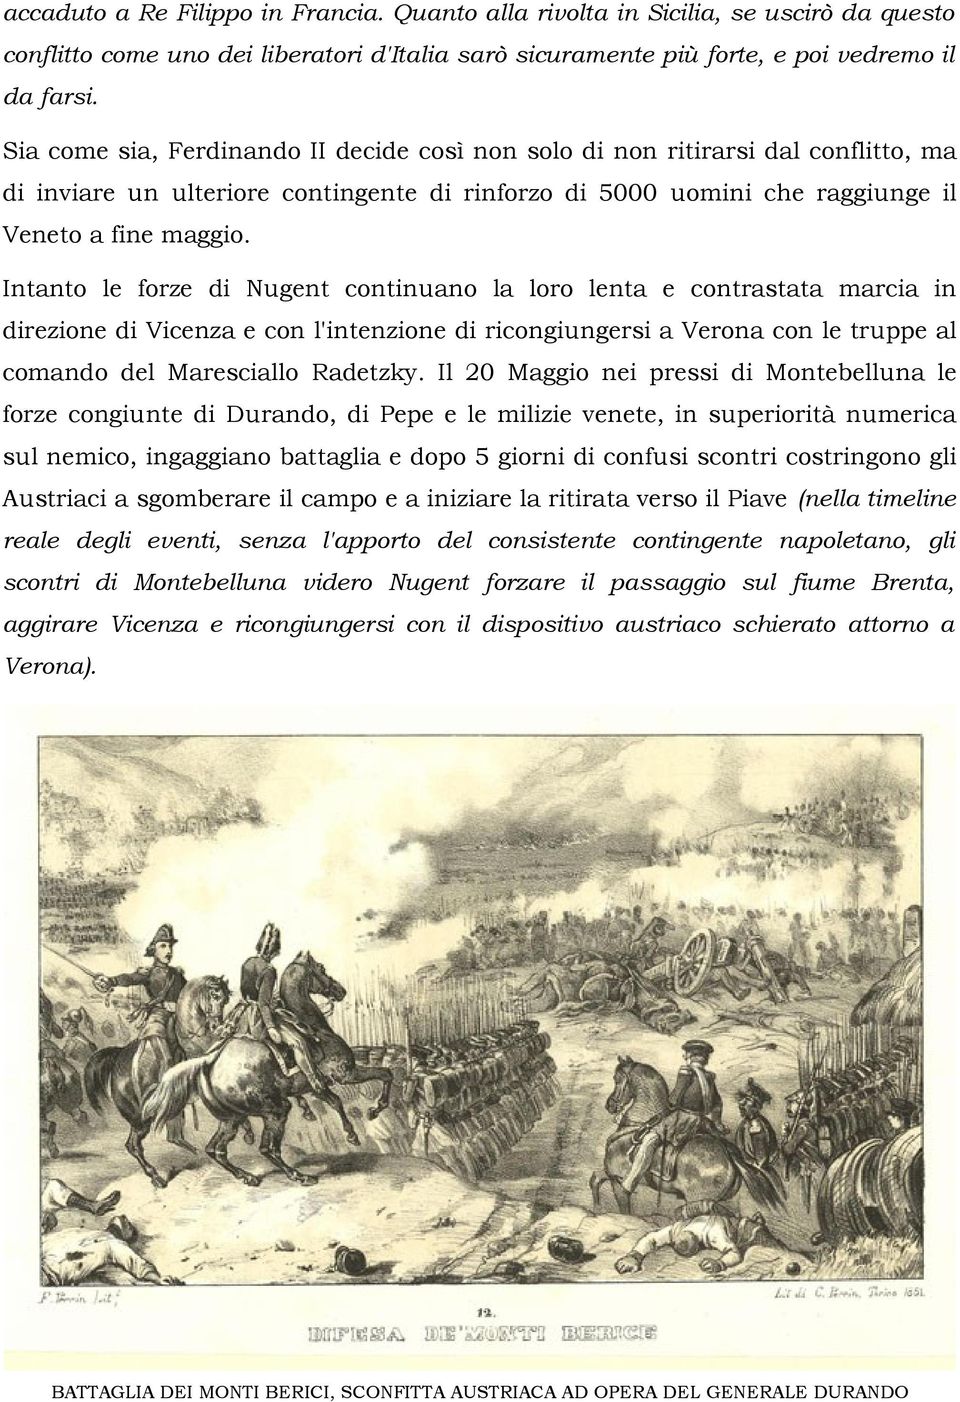 Intanto le forze di Nugent continuano la loro lenta e contrastata marcia in direzione di Vicenza e con l'intenzione di ricongiungersi a Verona con le truppe al comando del Maresciallo Radetzky.